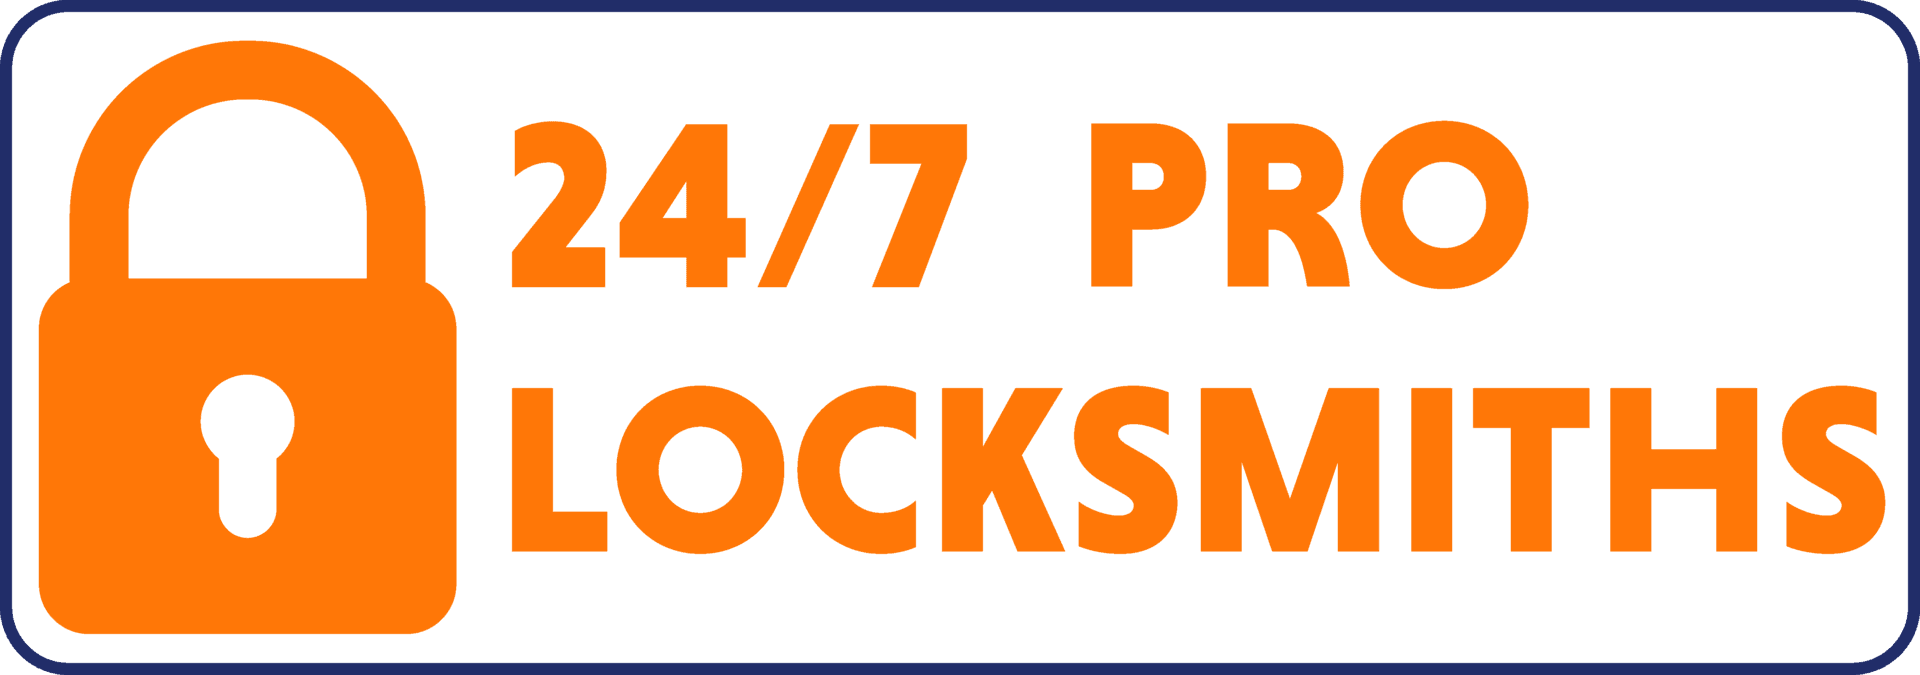 24/7 pro locksmiths logo